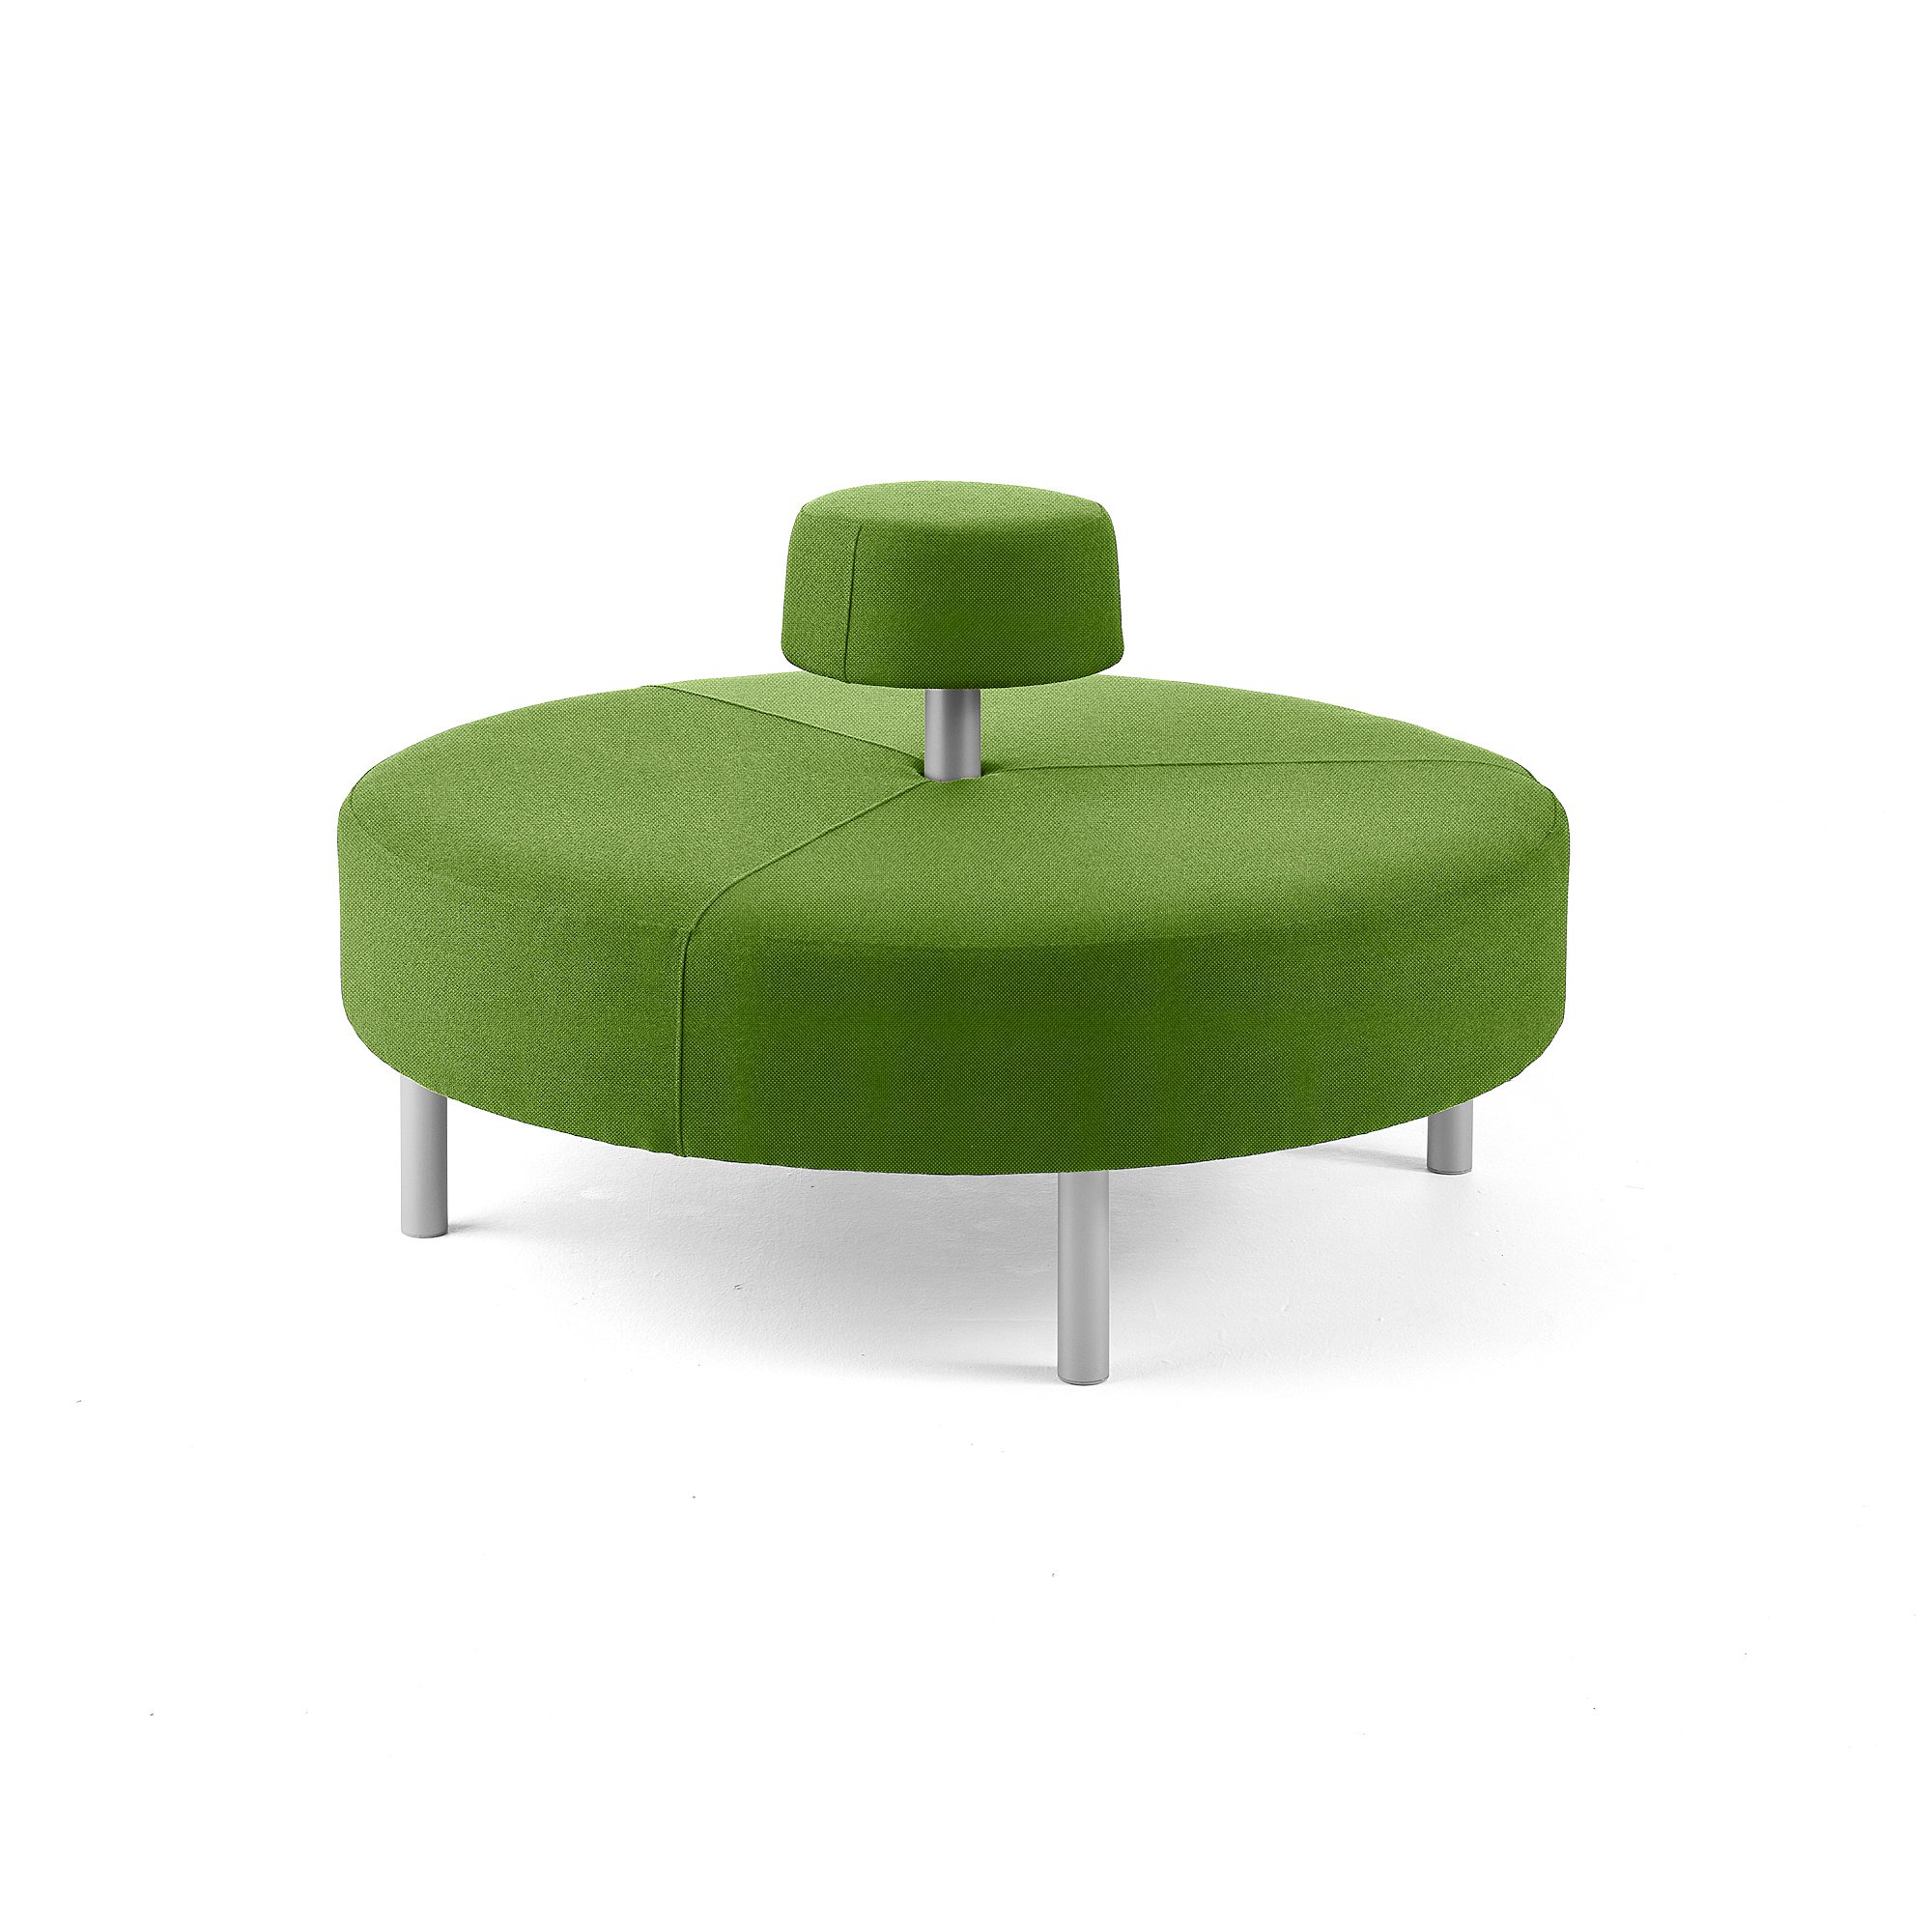 Kulatá sedačka DOT, kruhové opěradlo, Ø 1300 mm, potah Repetto, luční zelená